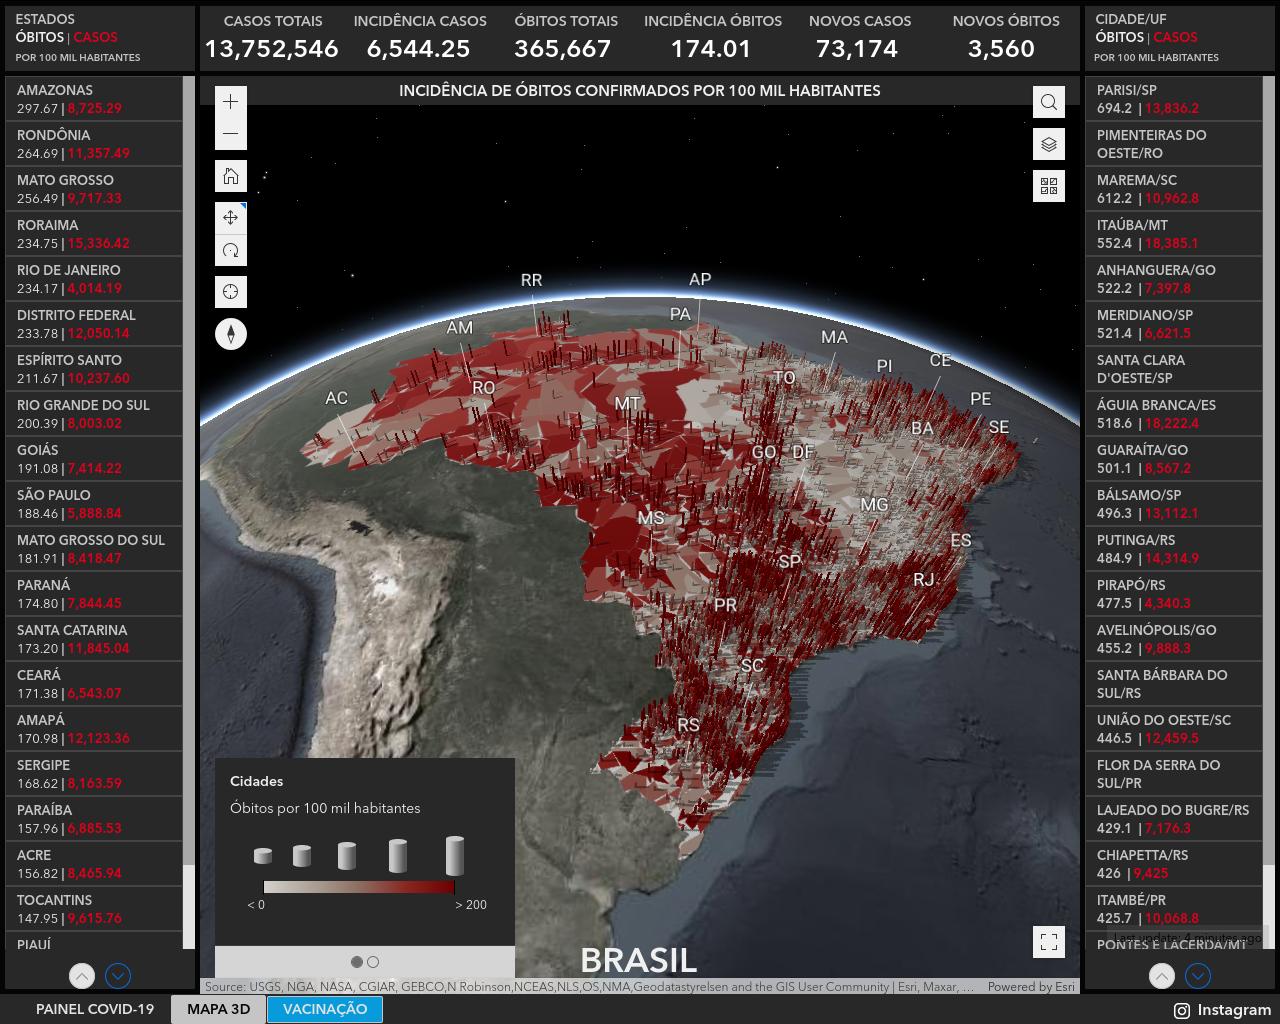 Epidemija Brazil mapa 1.jpg